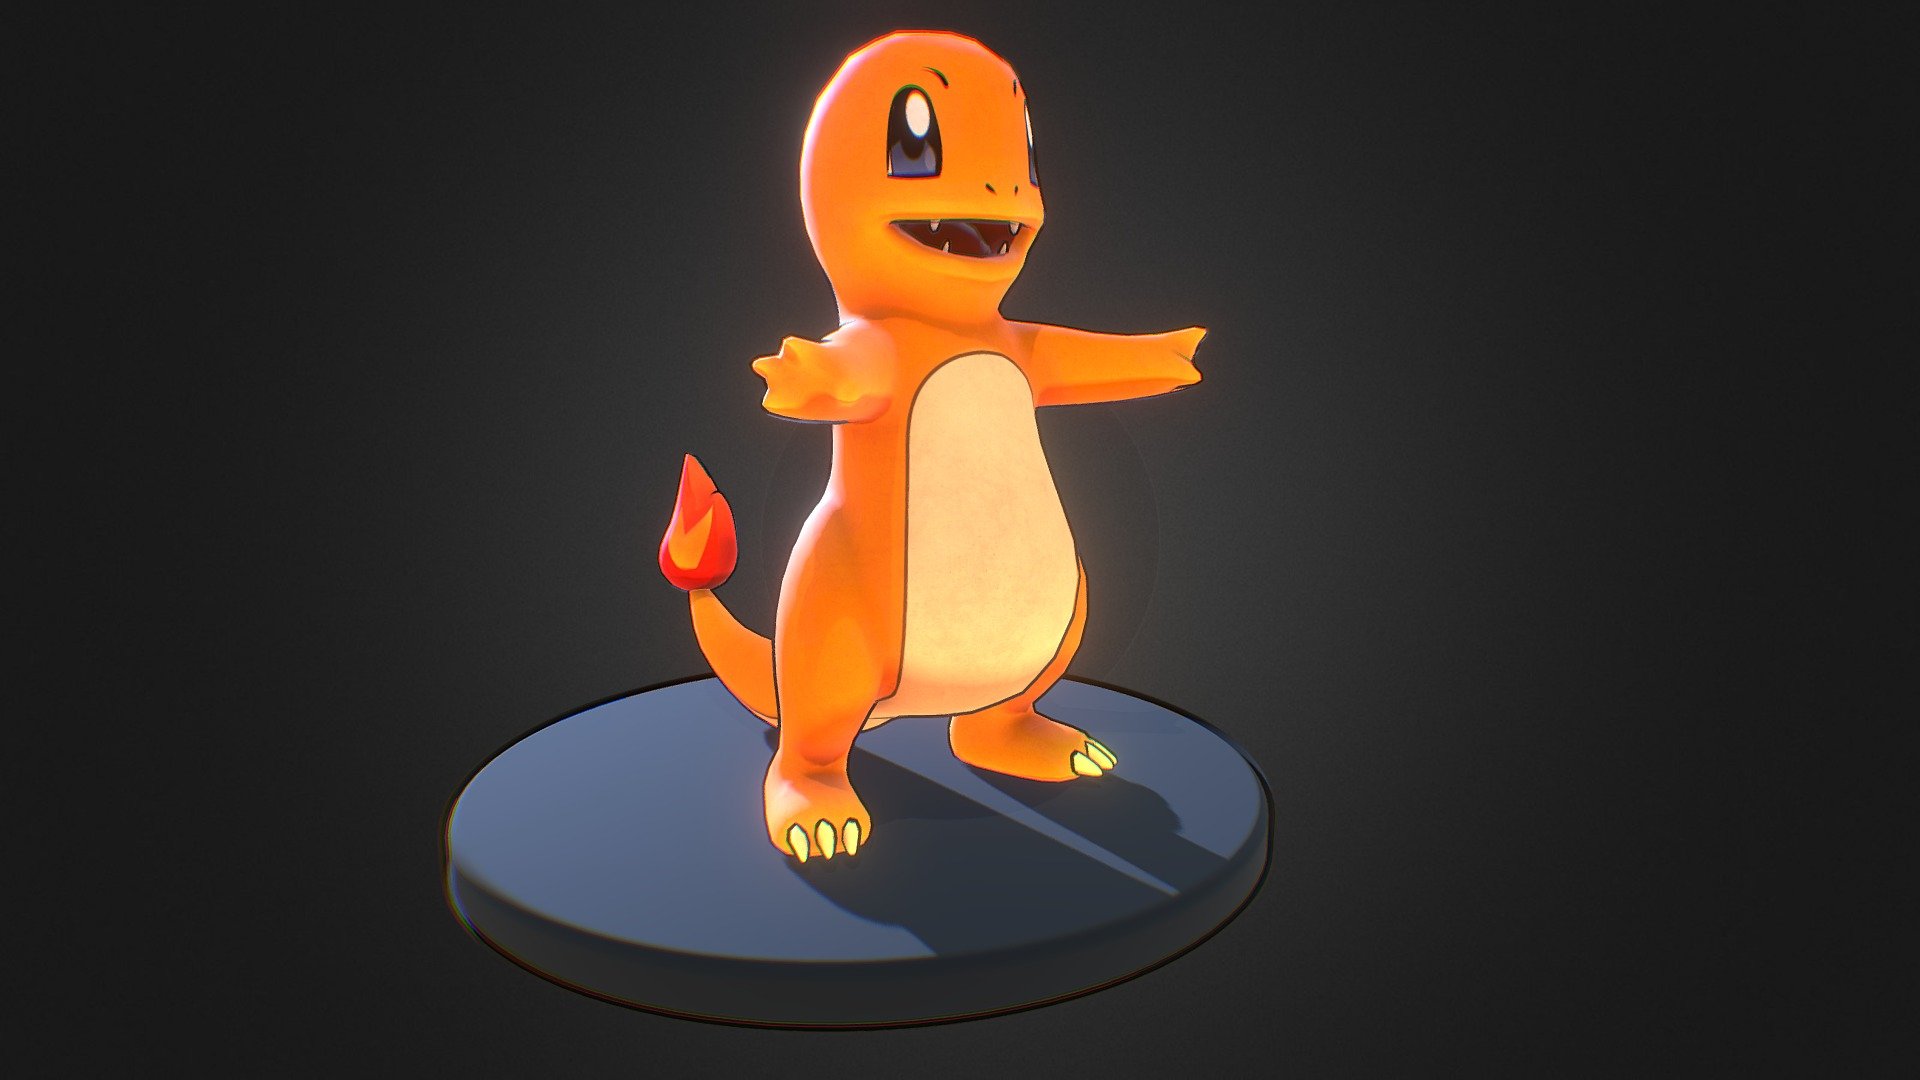 Pokemon number 3 - Charmander Pokemon - 3D model by 3dlogicus 3d model